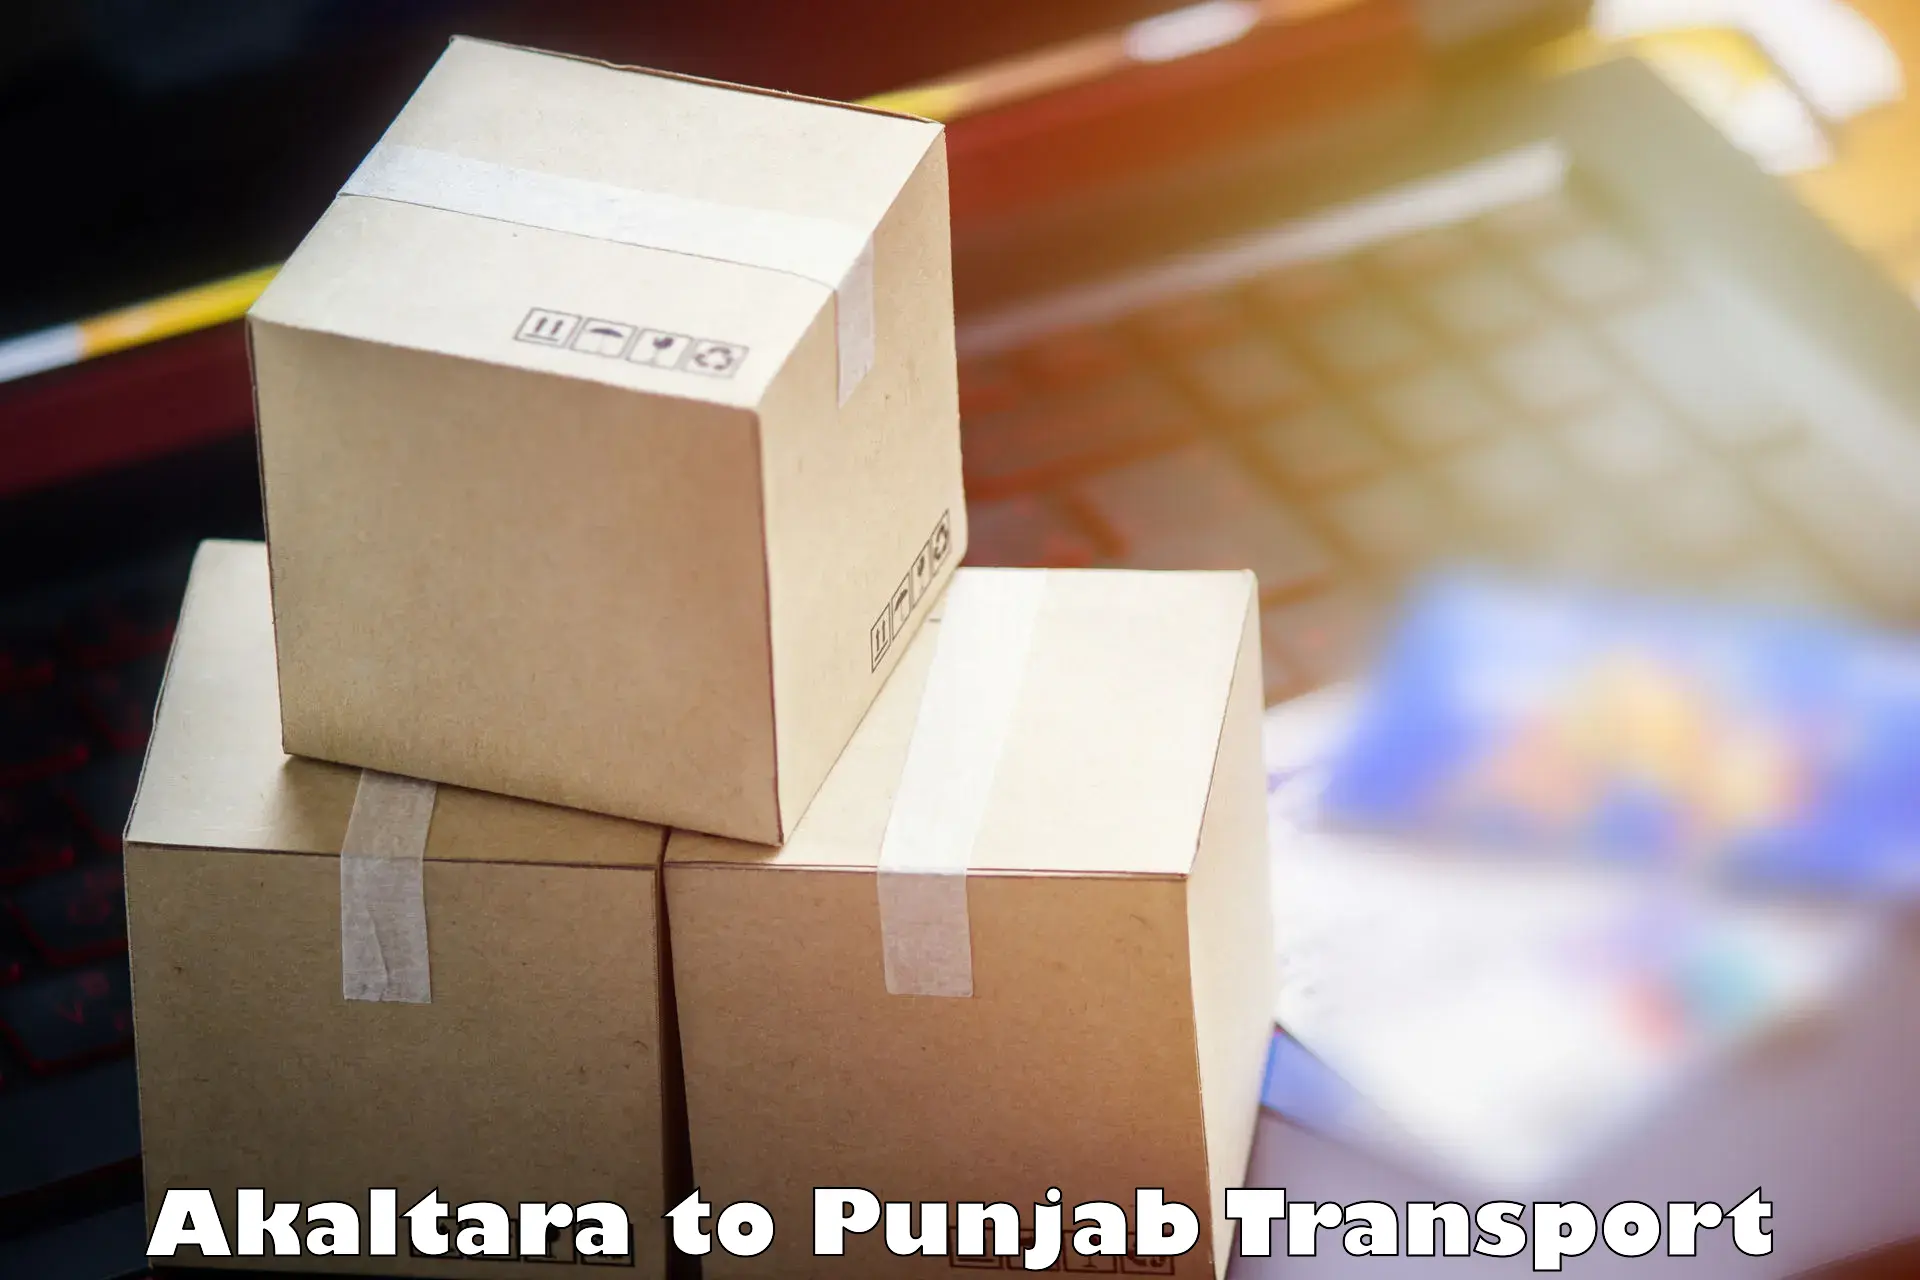 Parcel transport services Akaltara to Jalandhar